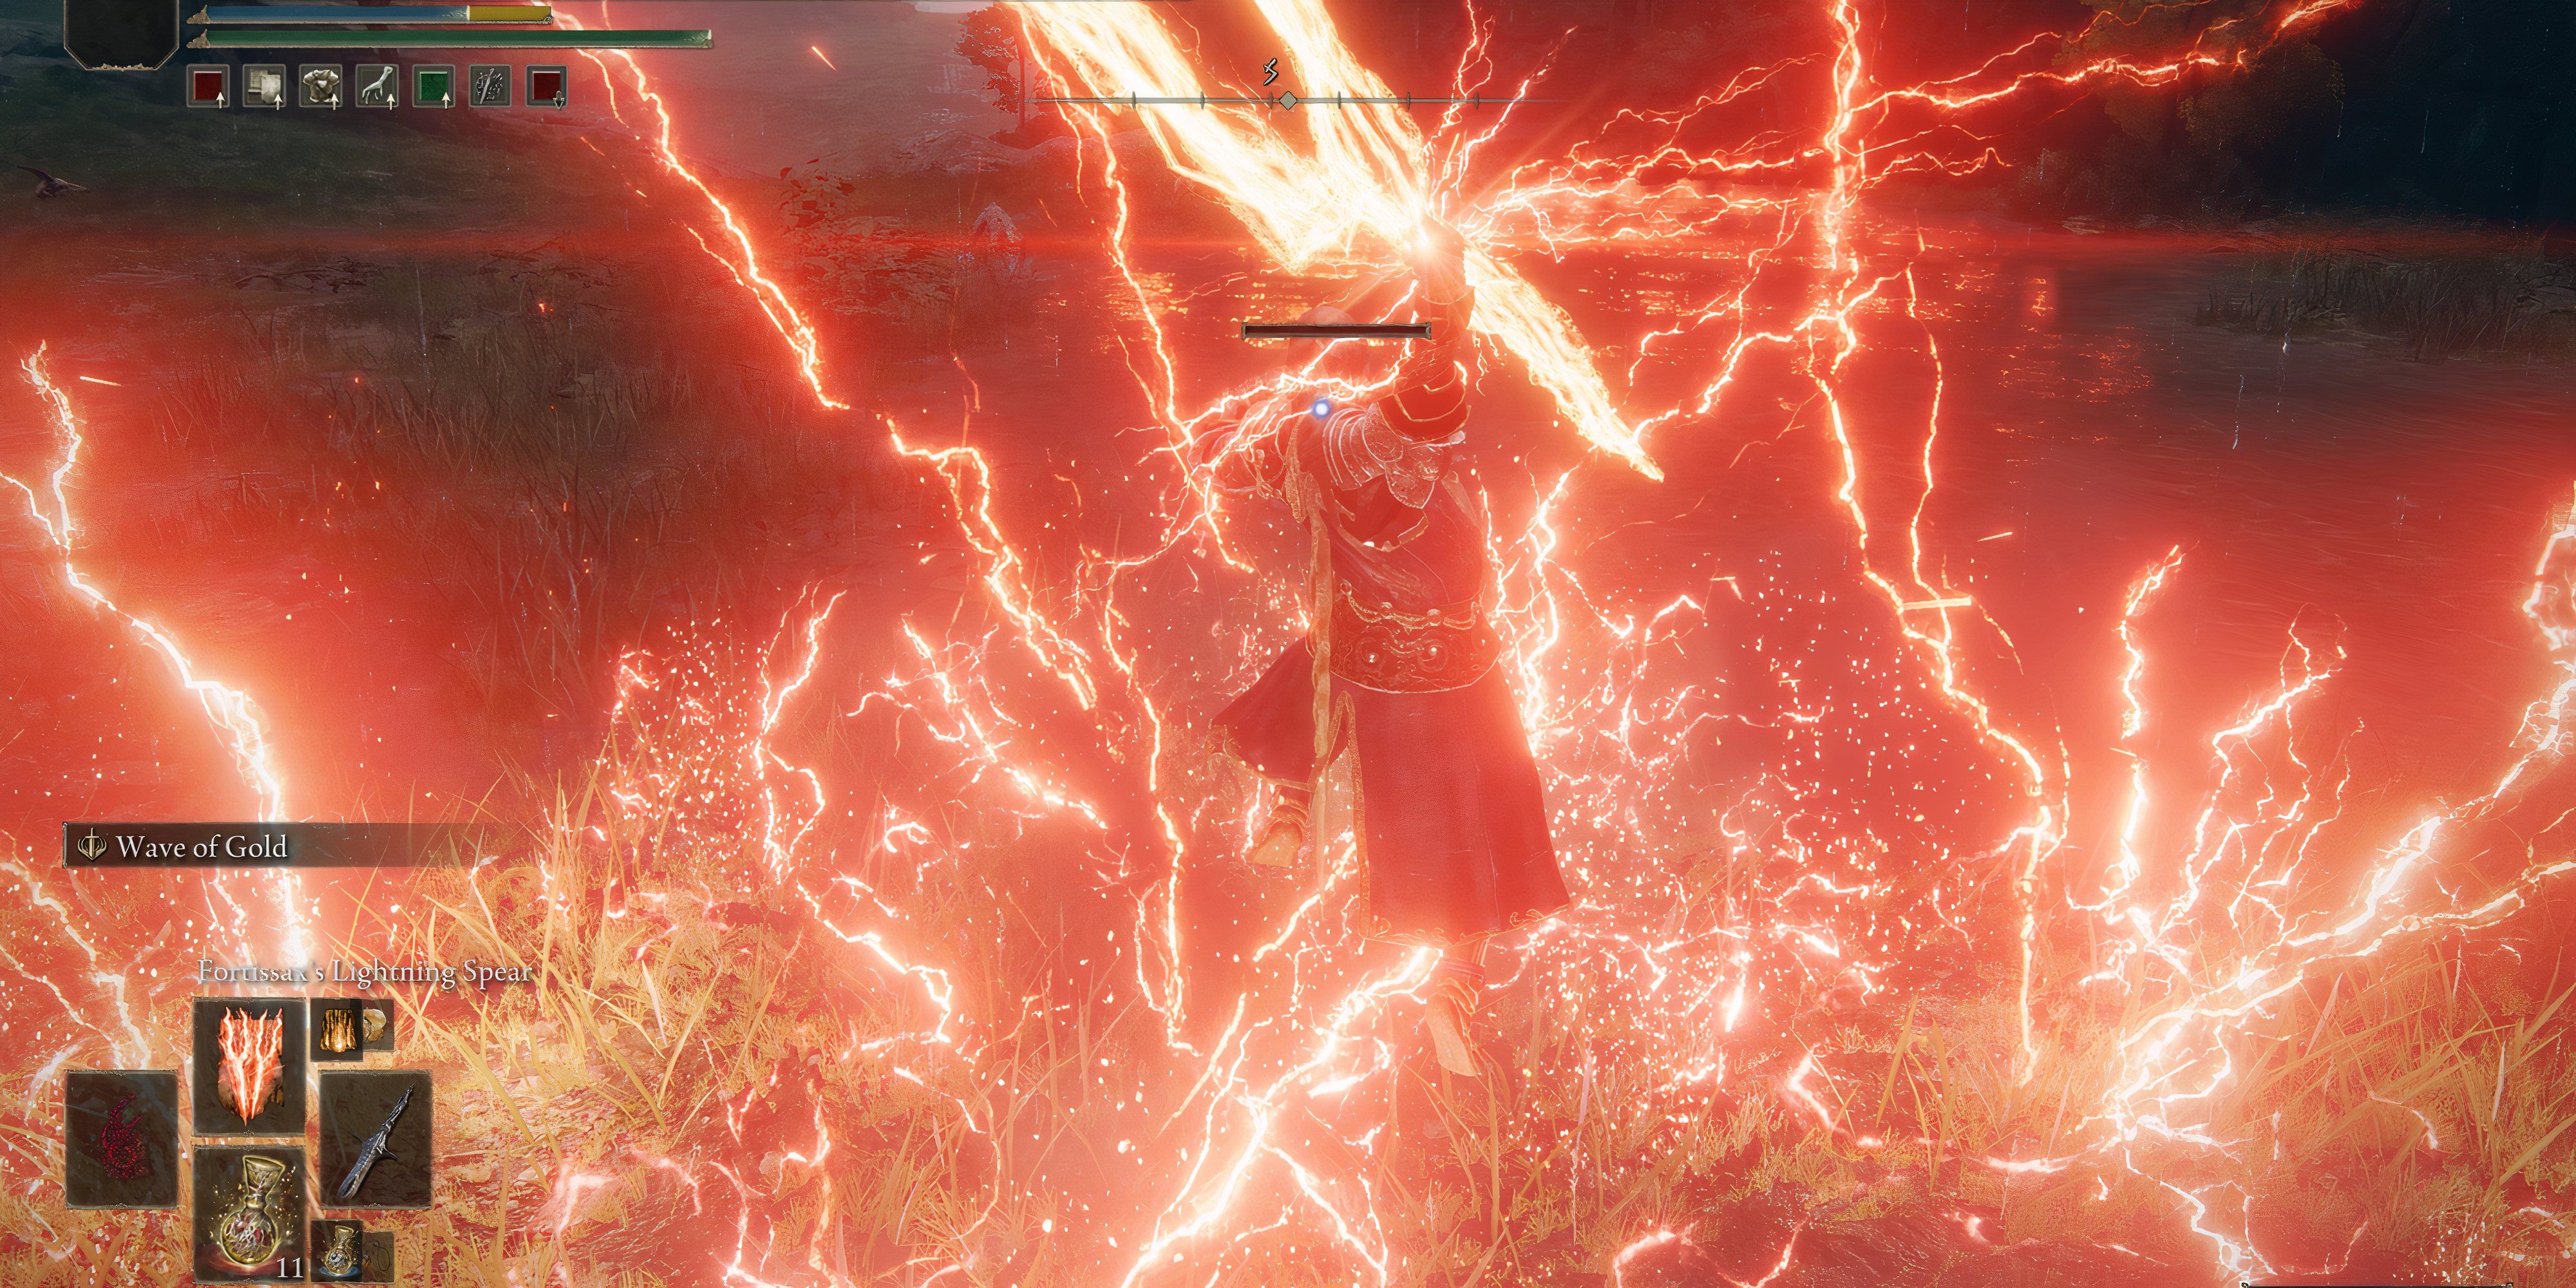 Elden Ring: Best Lightning Spells, Ranked Summoning red lightning that spreads across the ground